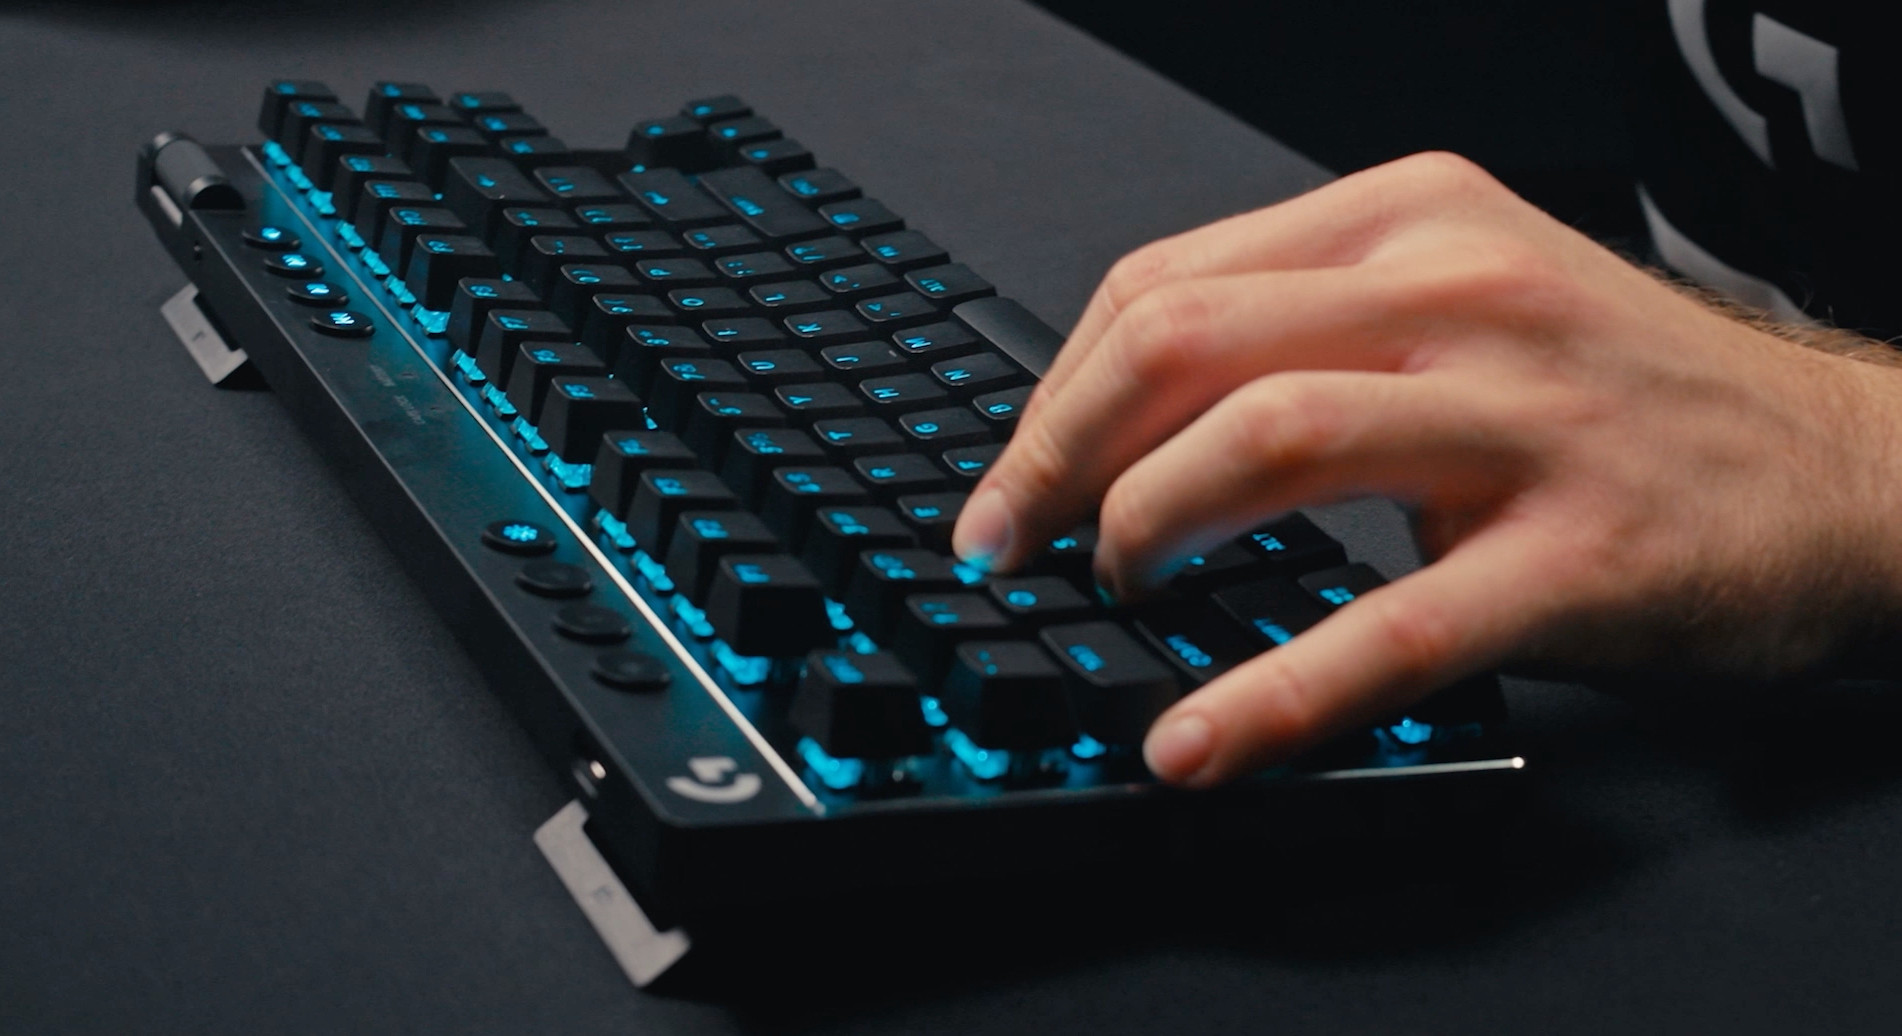 Compre agora: teclado gamer Logitech com Lightspeed sai 25% off